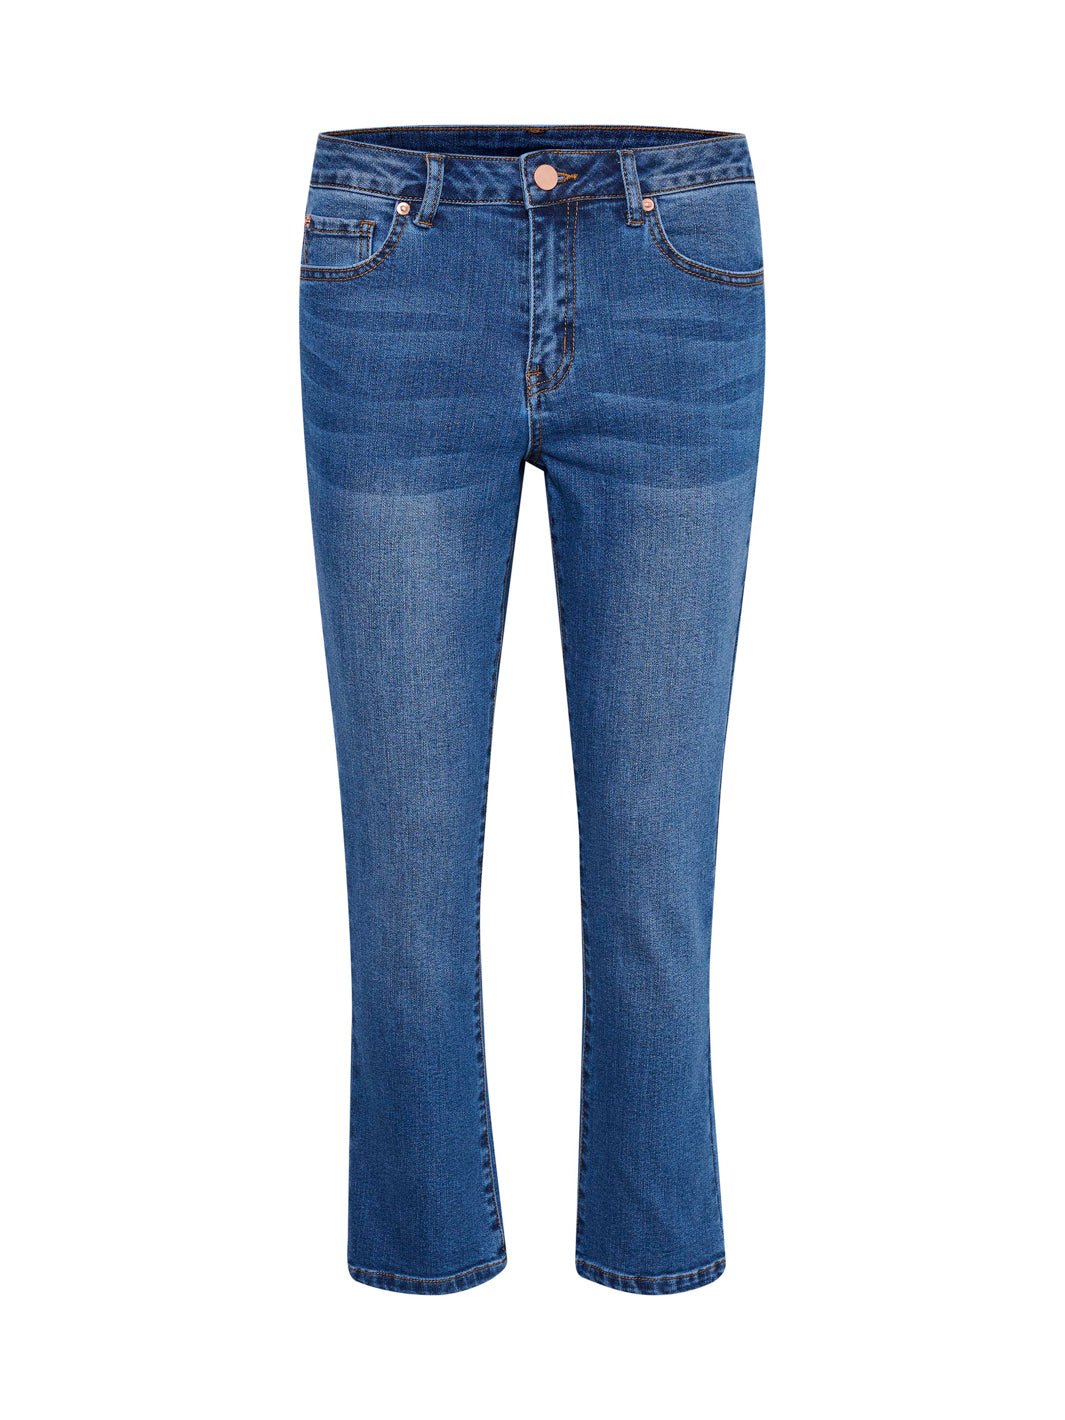 Lev. 5-7 dg. Kaffe KAsinem jeans cropped medium blue denim - Online-Mode